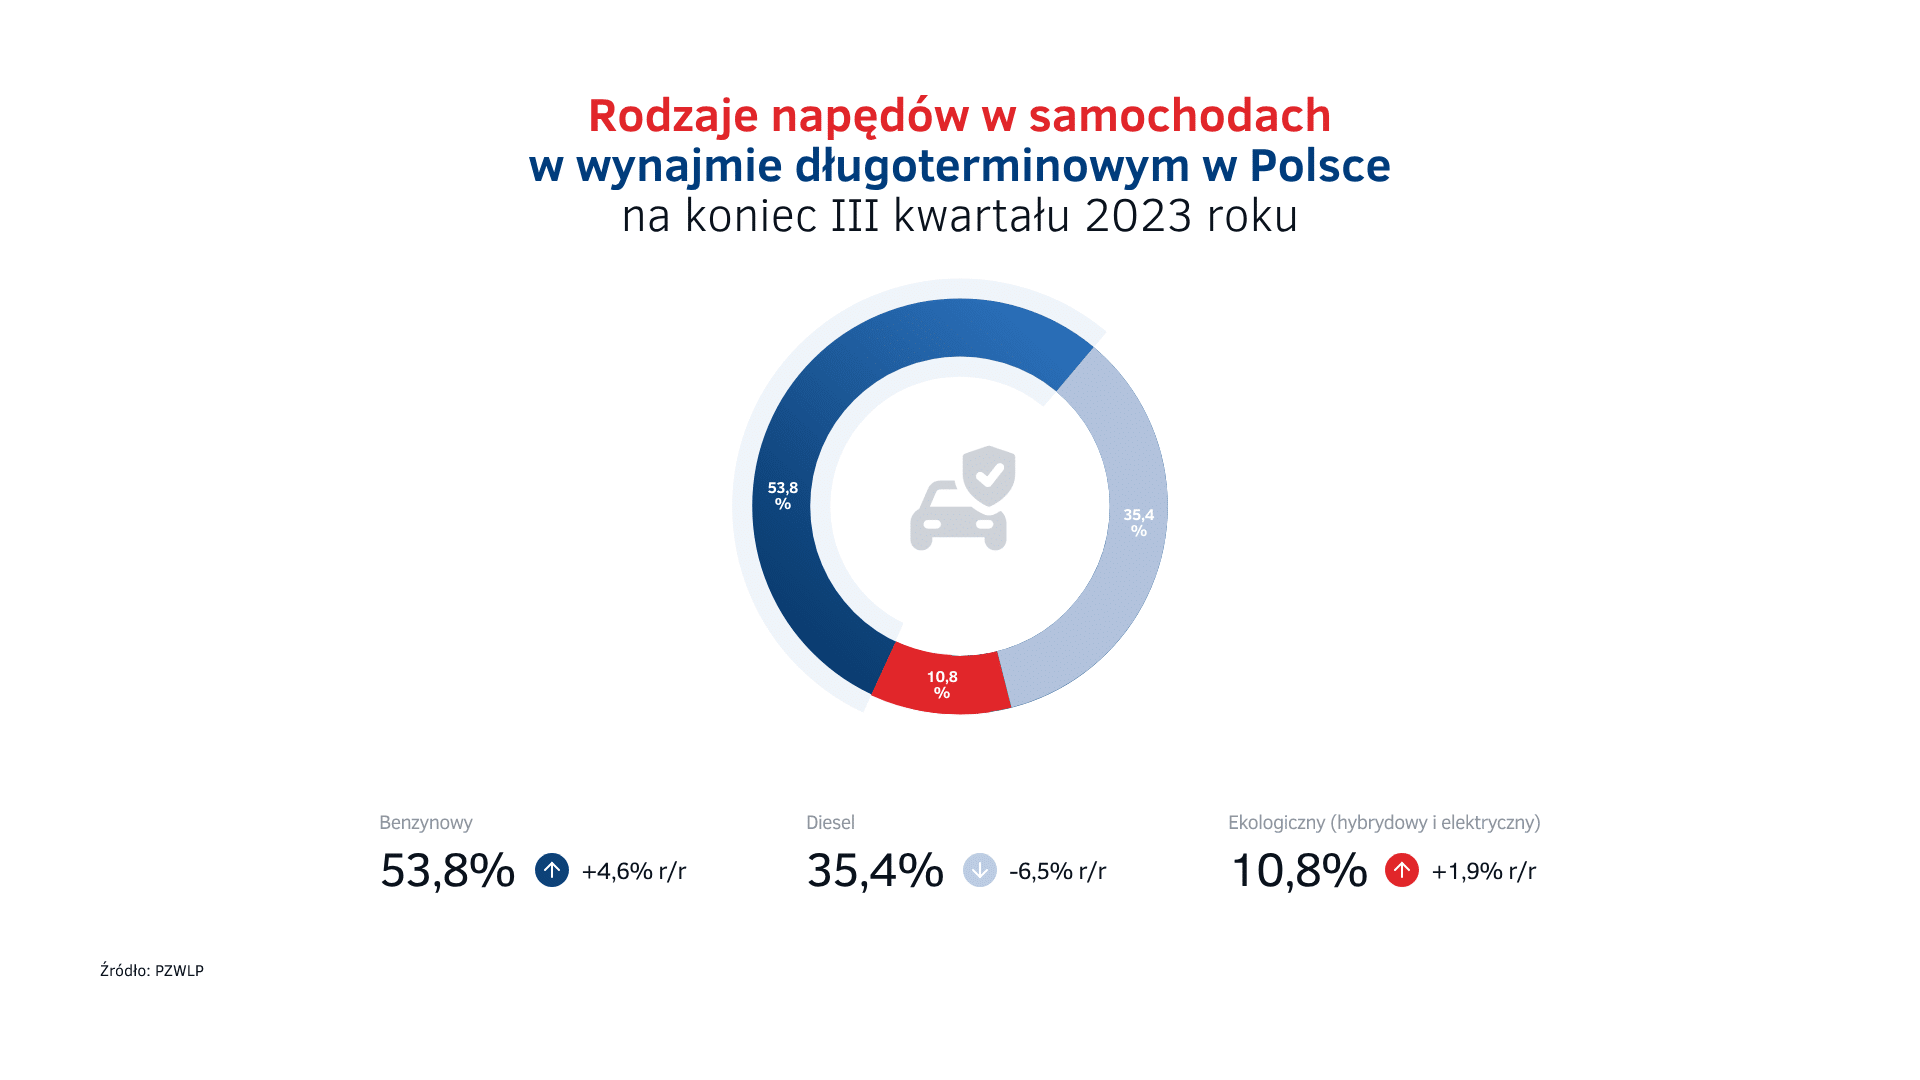 Napędy w wynajmie długoterminowym w Polsce na koniec III kw. 2023